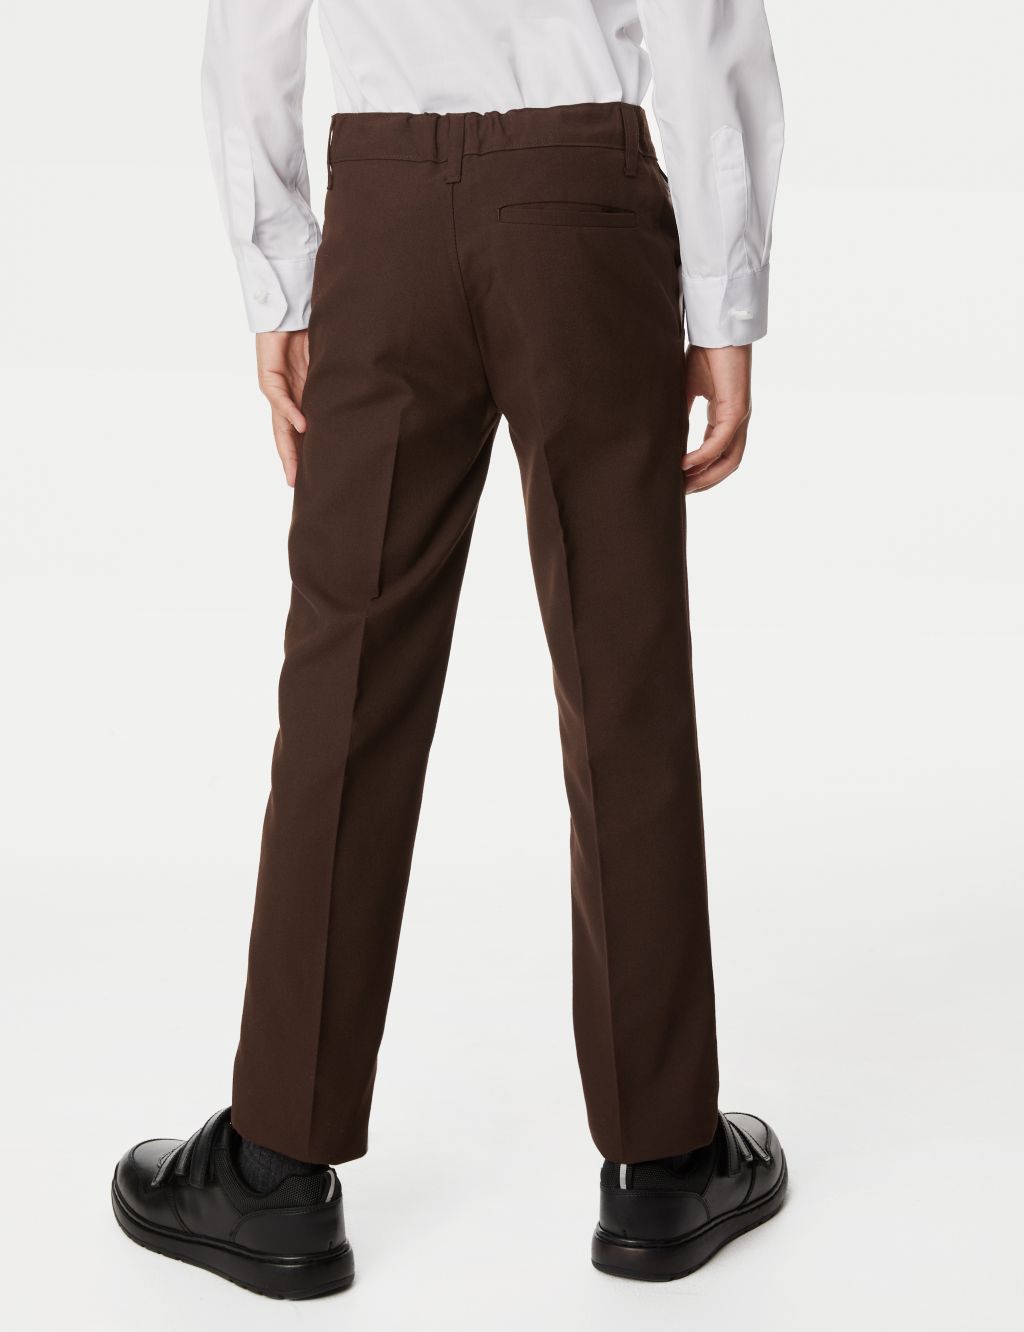 2pk Boys' Slim Leg School Trousers (2-18 Yrs) image 4